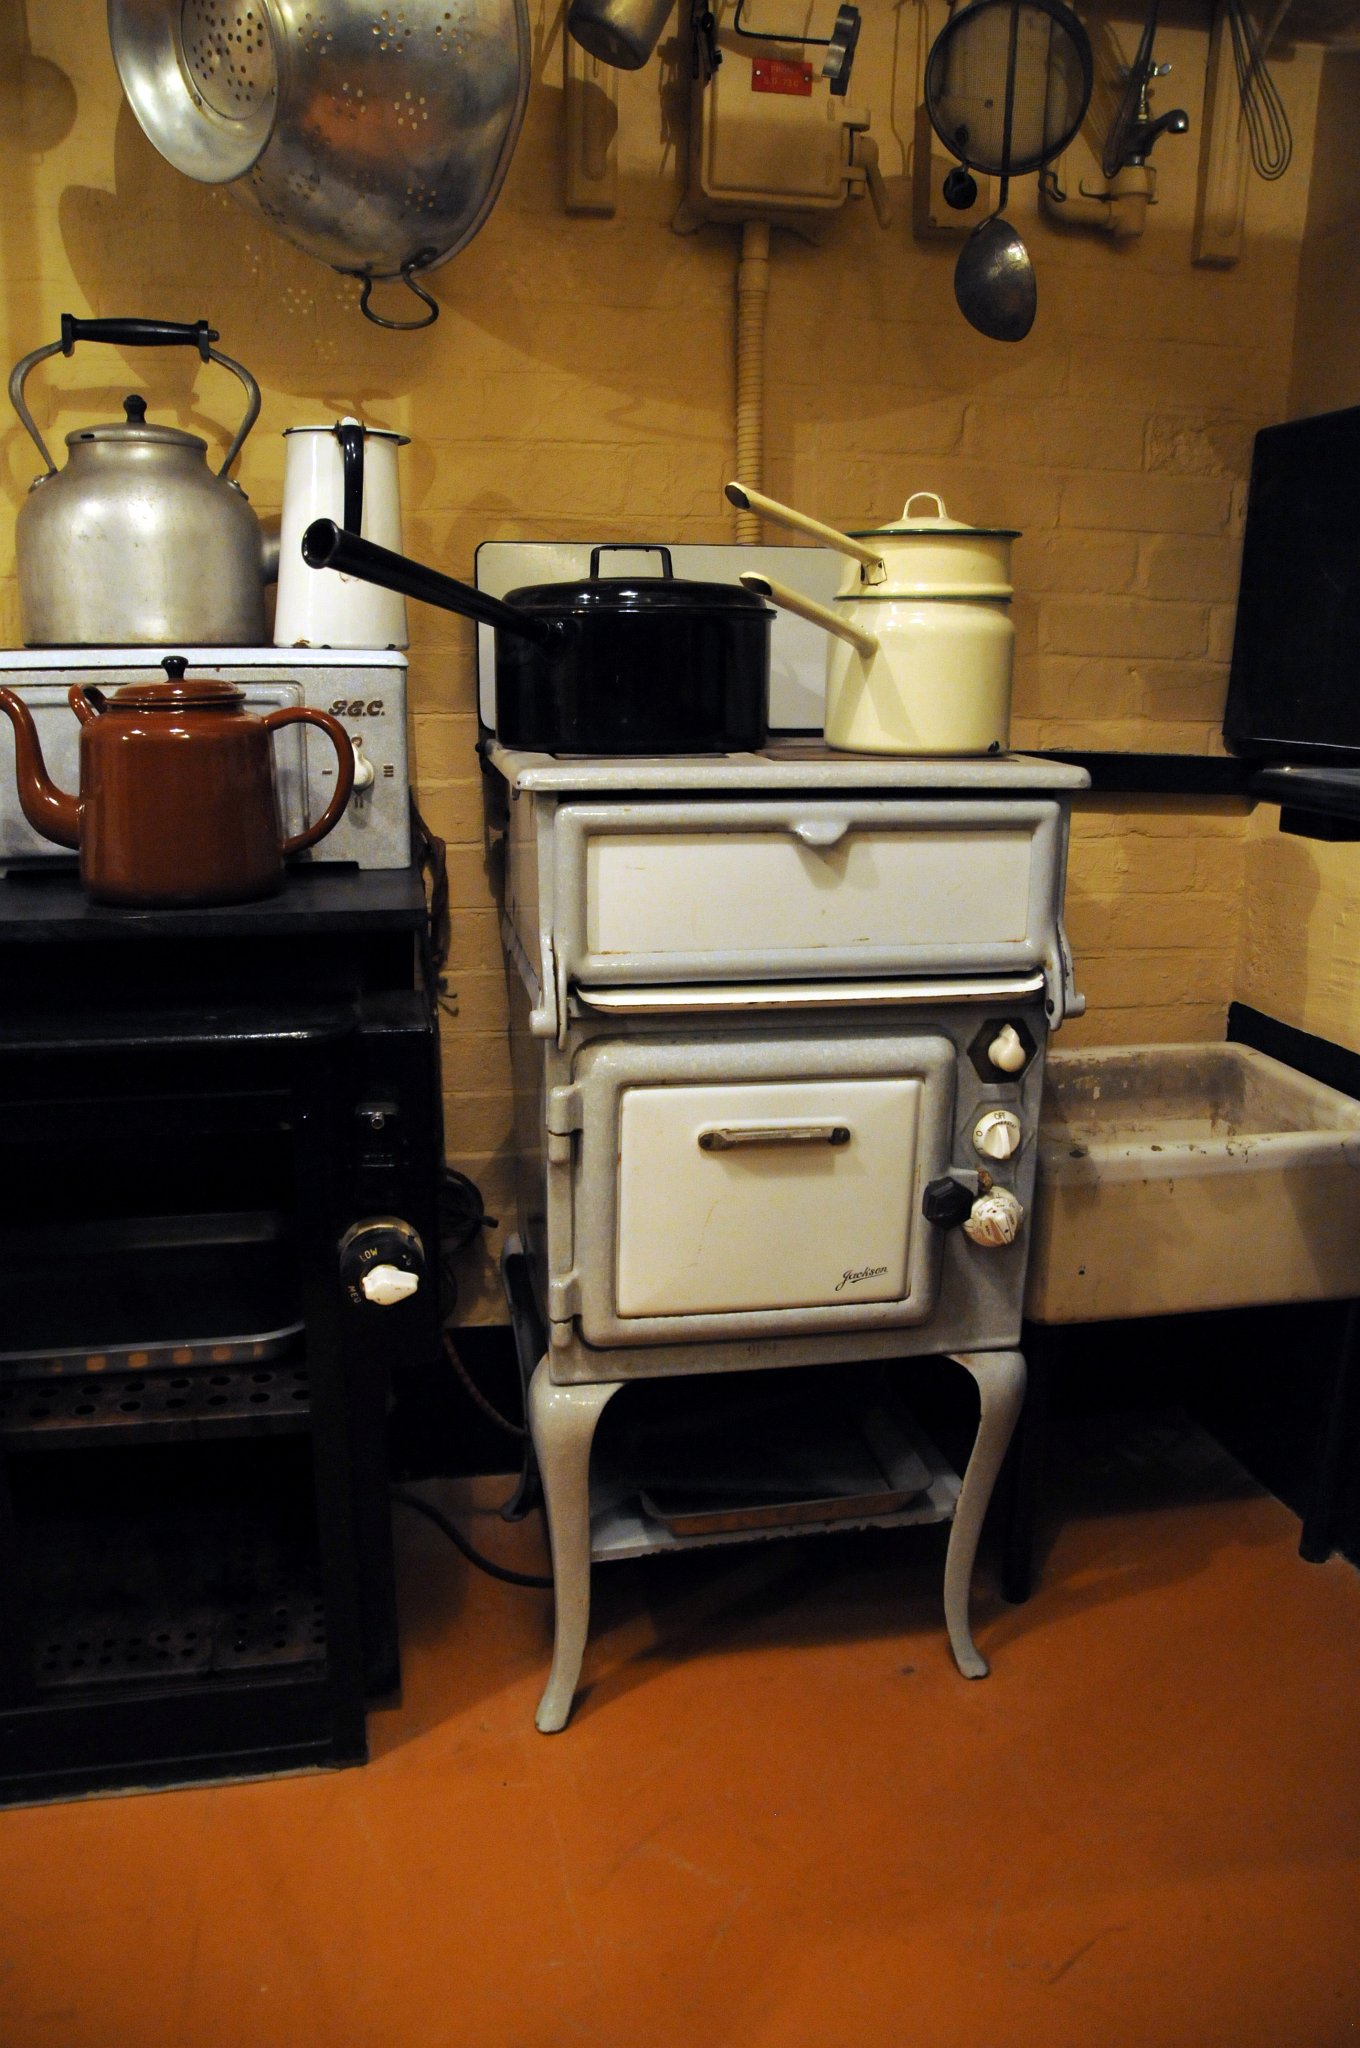 DSC_6604_1.jpg - Churchillova kuchyně. Kuchynňka měla všechnio základní vybavení od sporáku, trouby, konví a nádobí, mycího dřezu, vše napojené na elektriku.